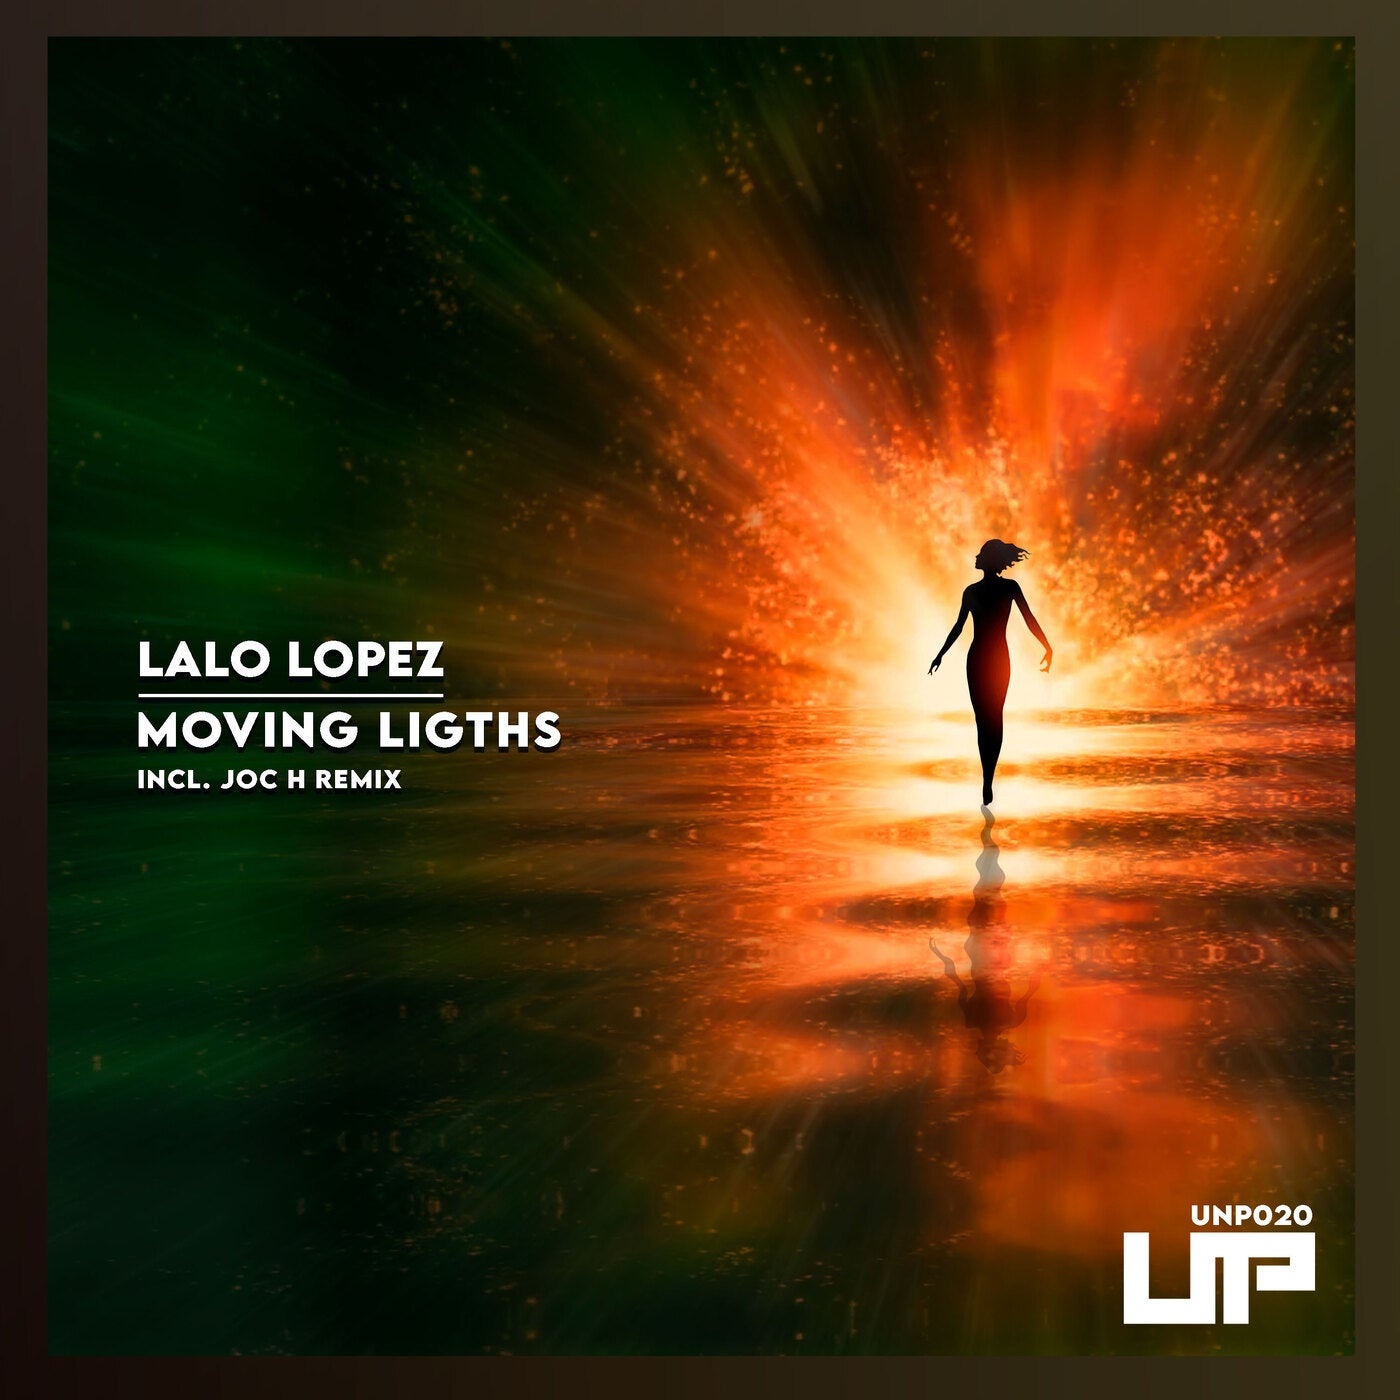 Lalo Lopez - Moving Ligths [UNP020]